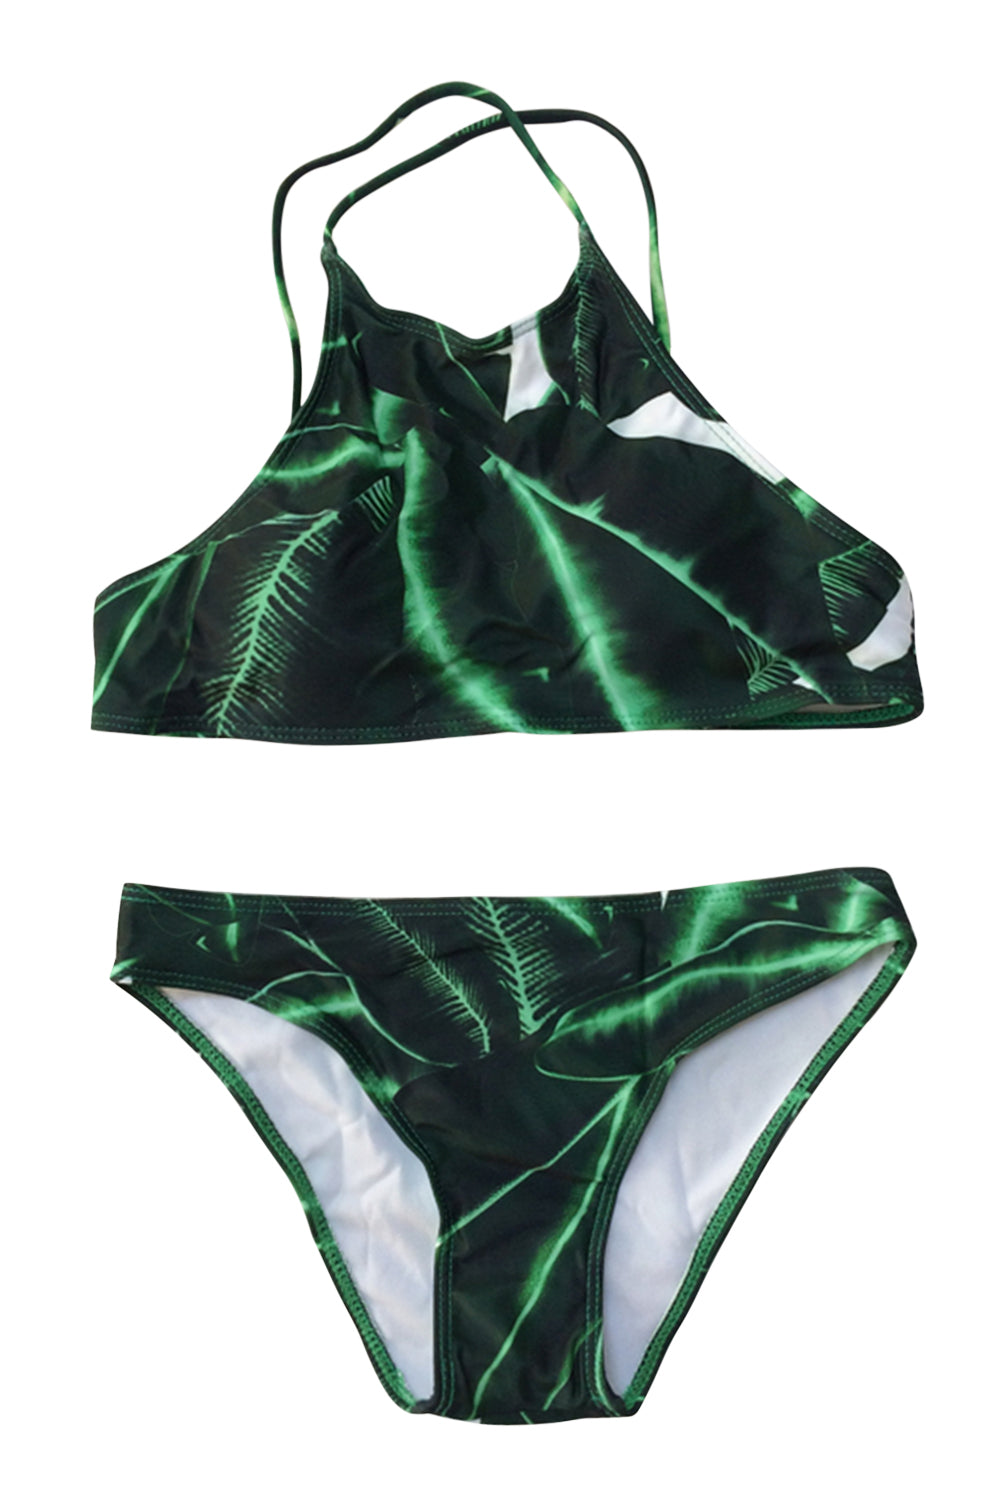 Iyasson Leaves printing Backless Halter Bikini Set